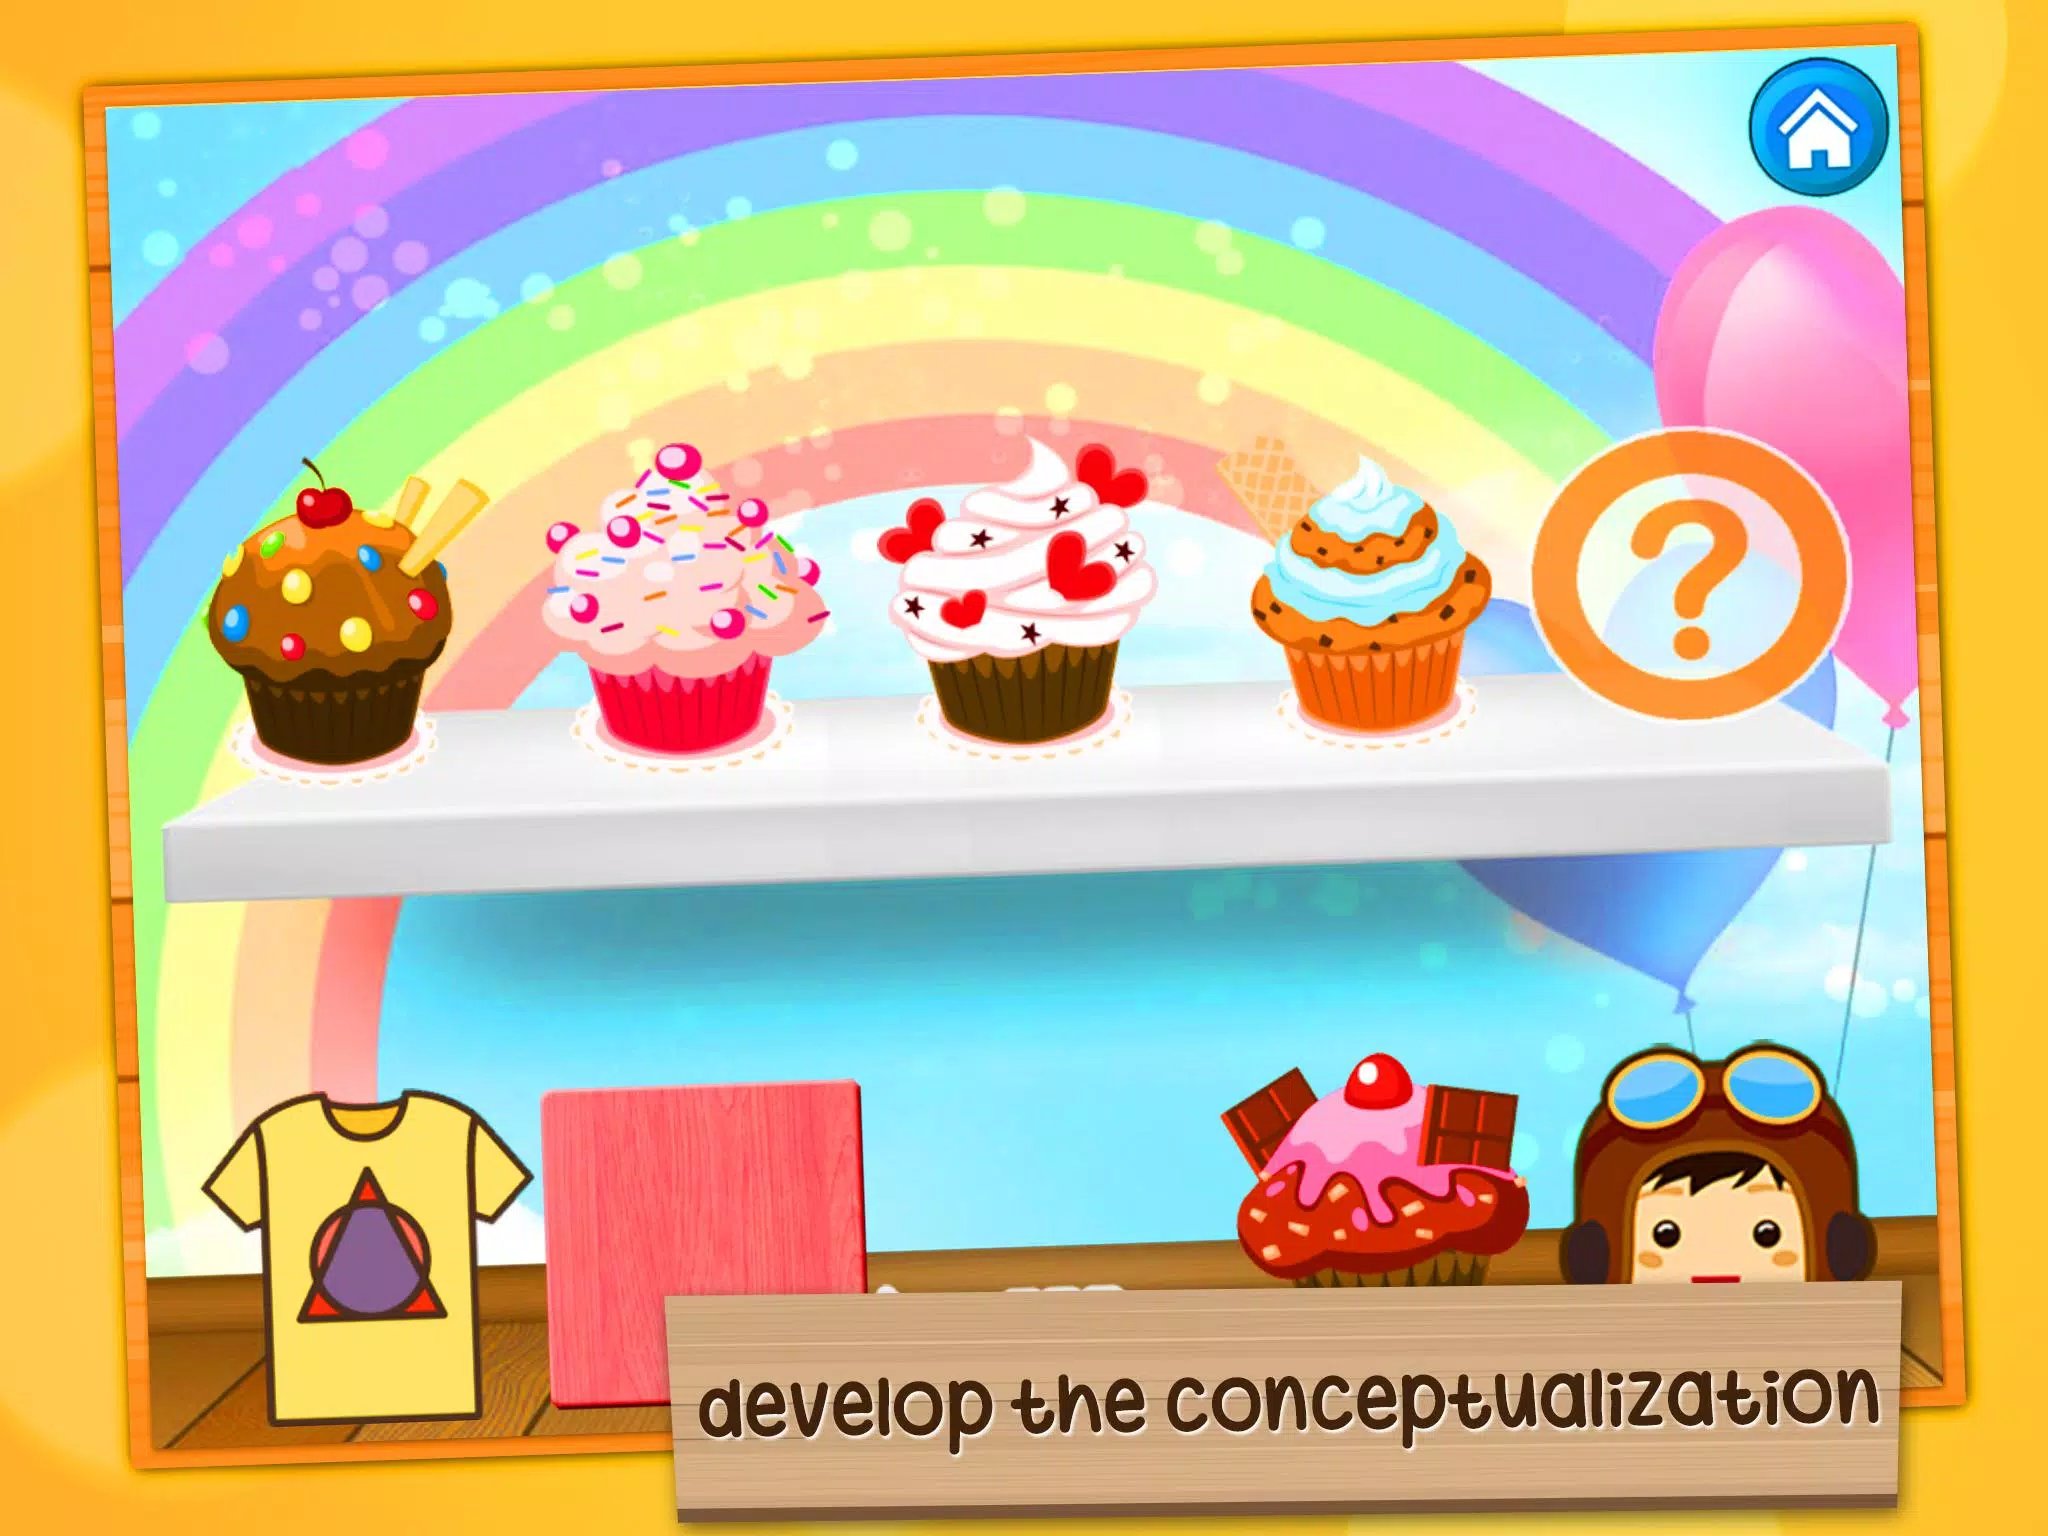 Download do APK de Jogos infantis: 3-7 anos para Android